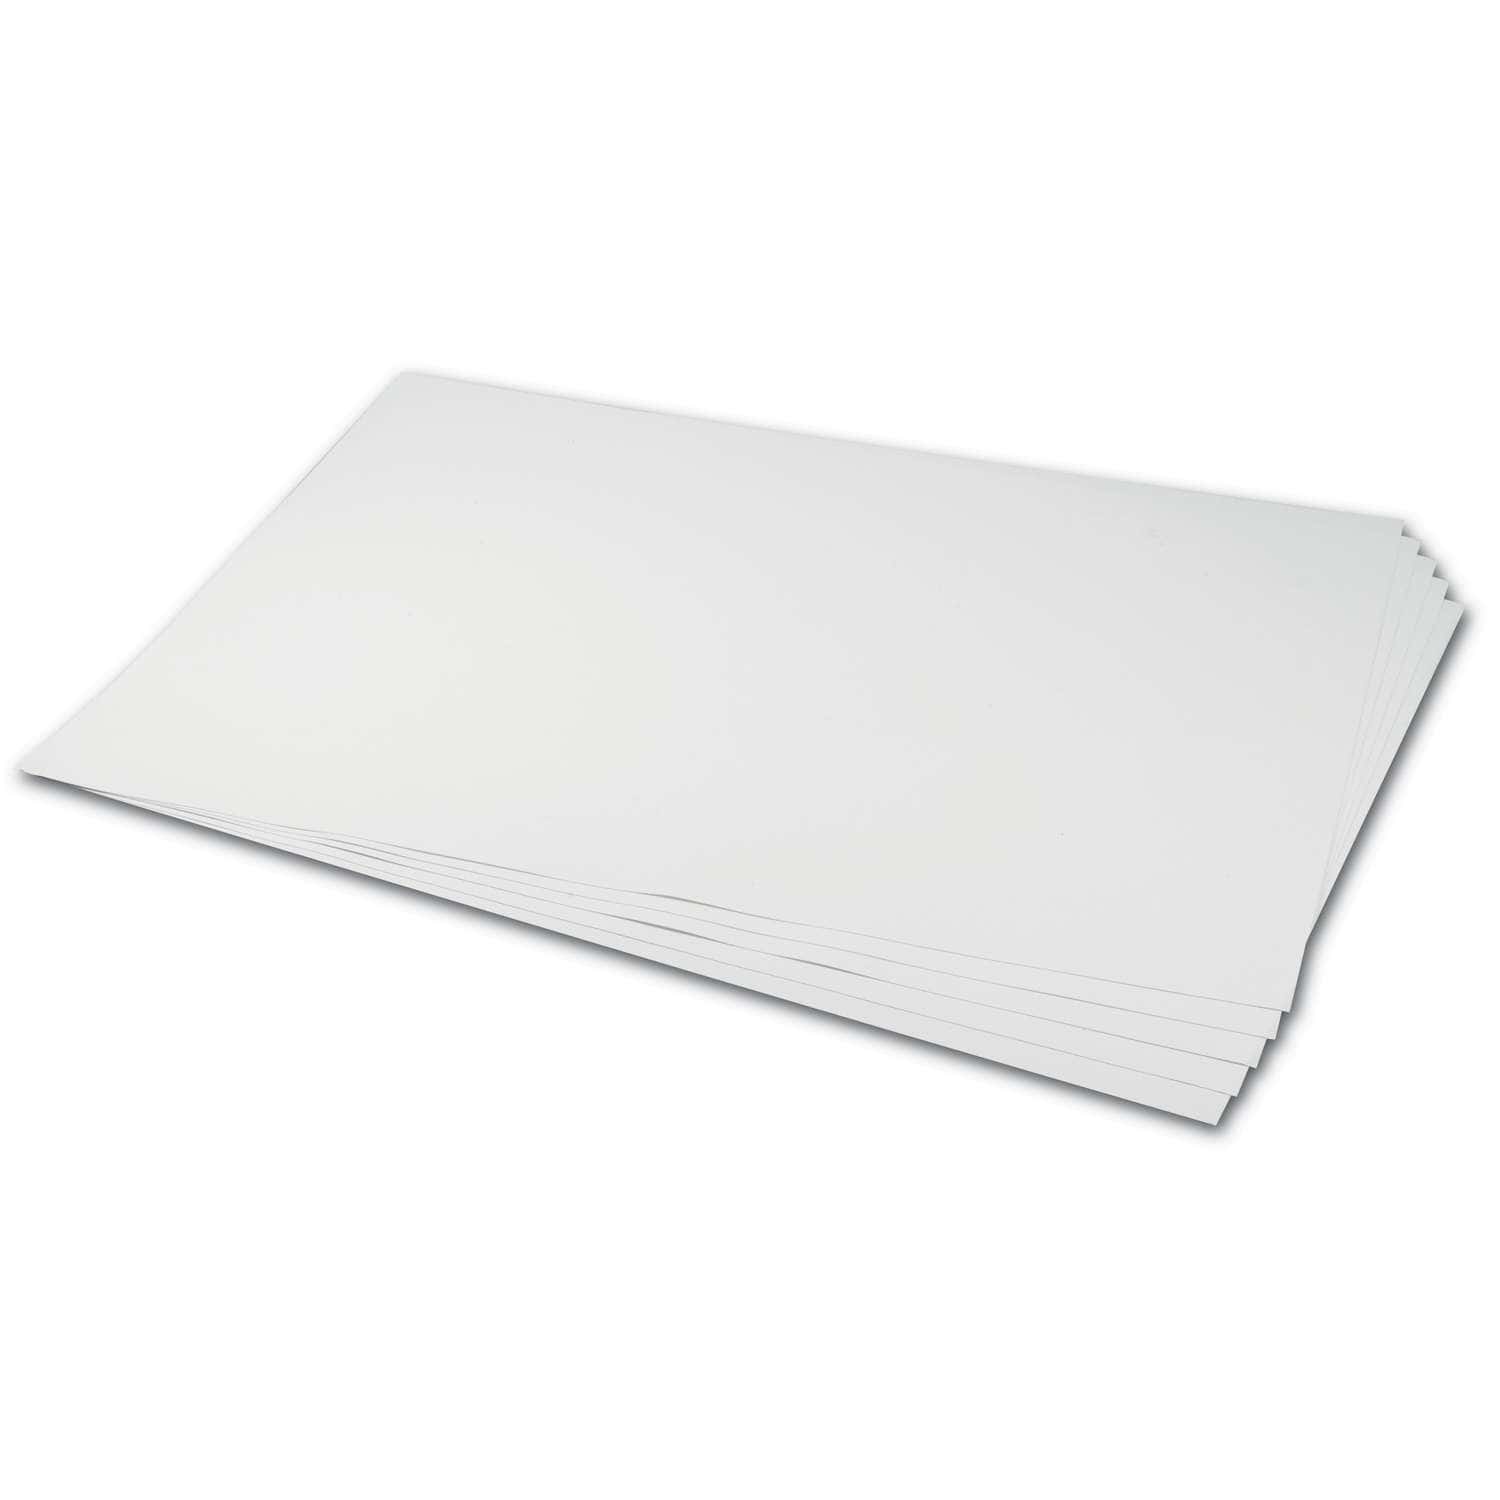 Papier aquarelle, 300gsm, 10 feuilles format A4, blanc